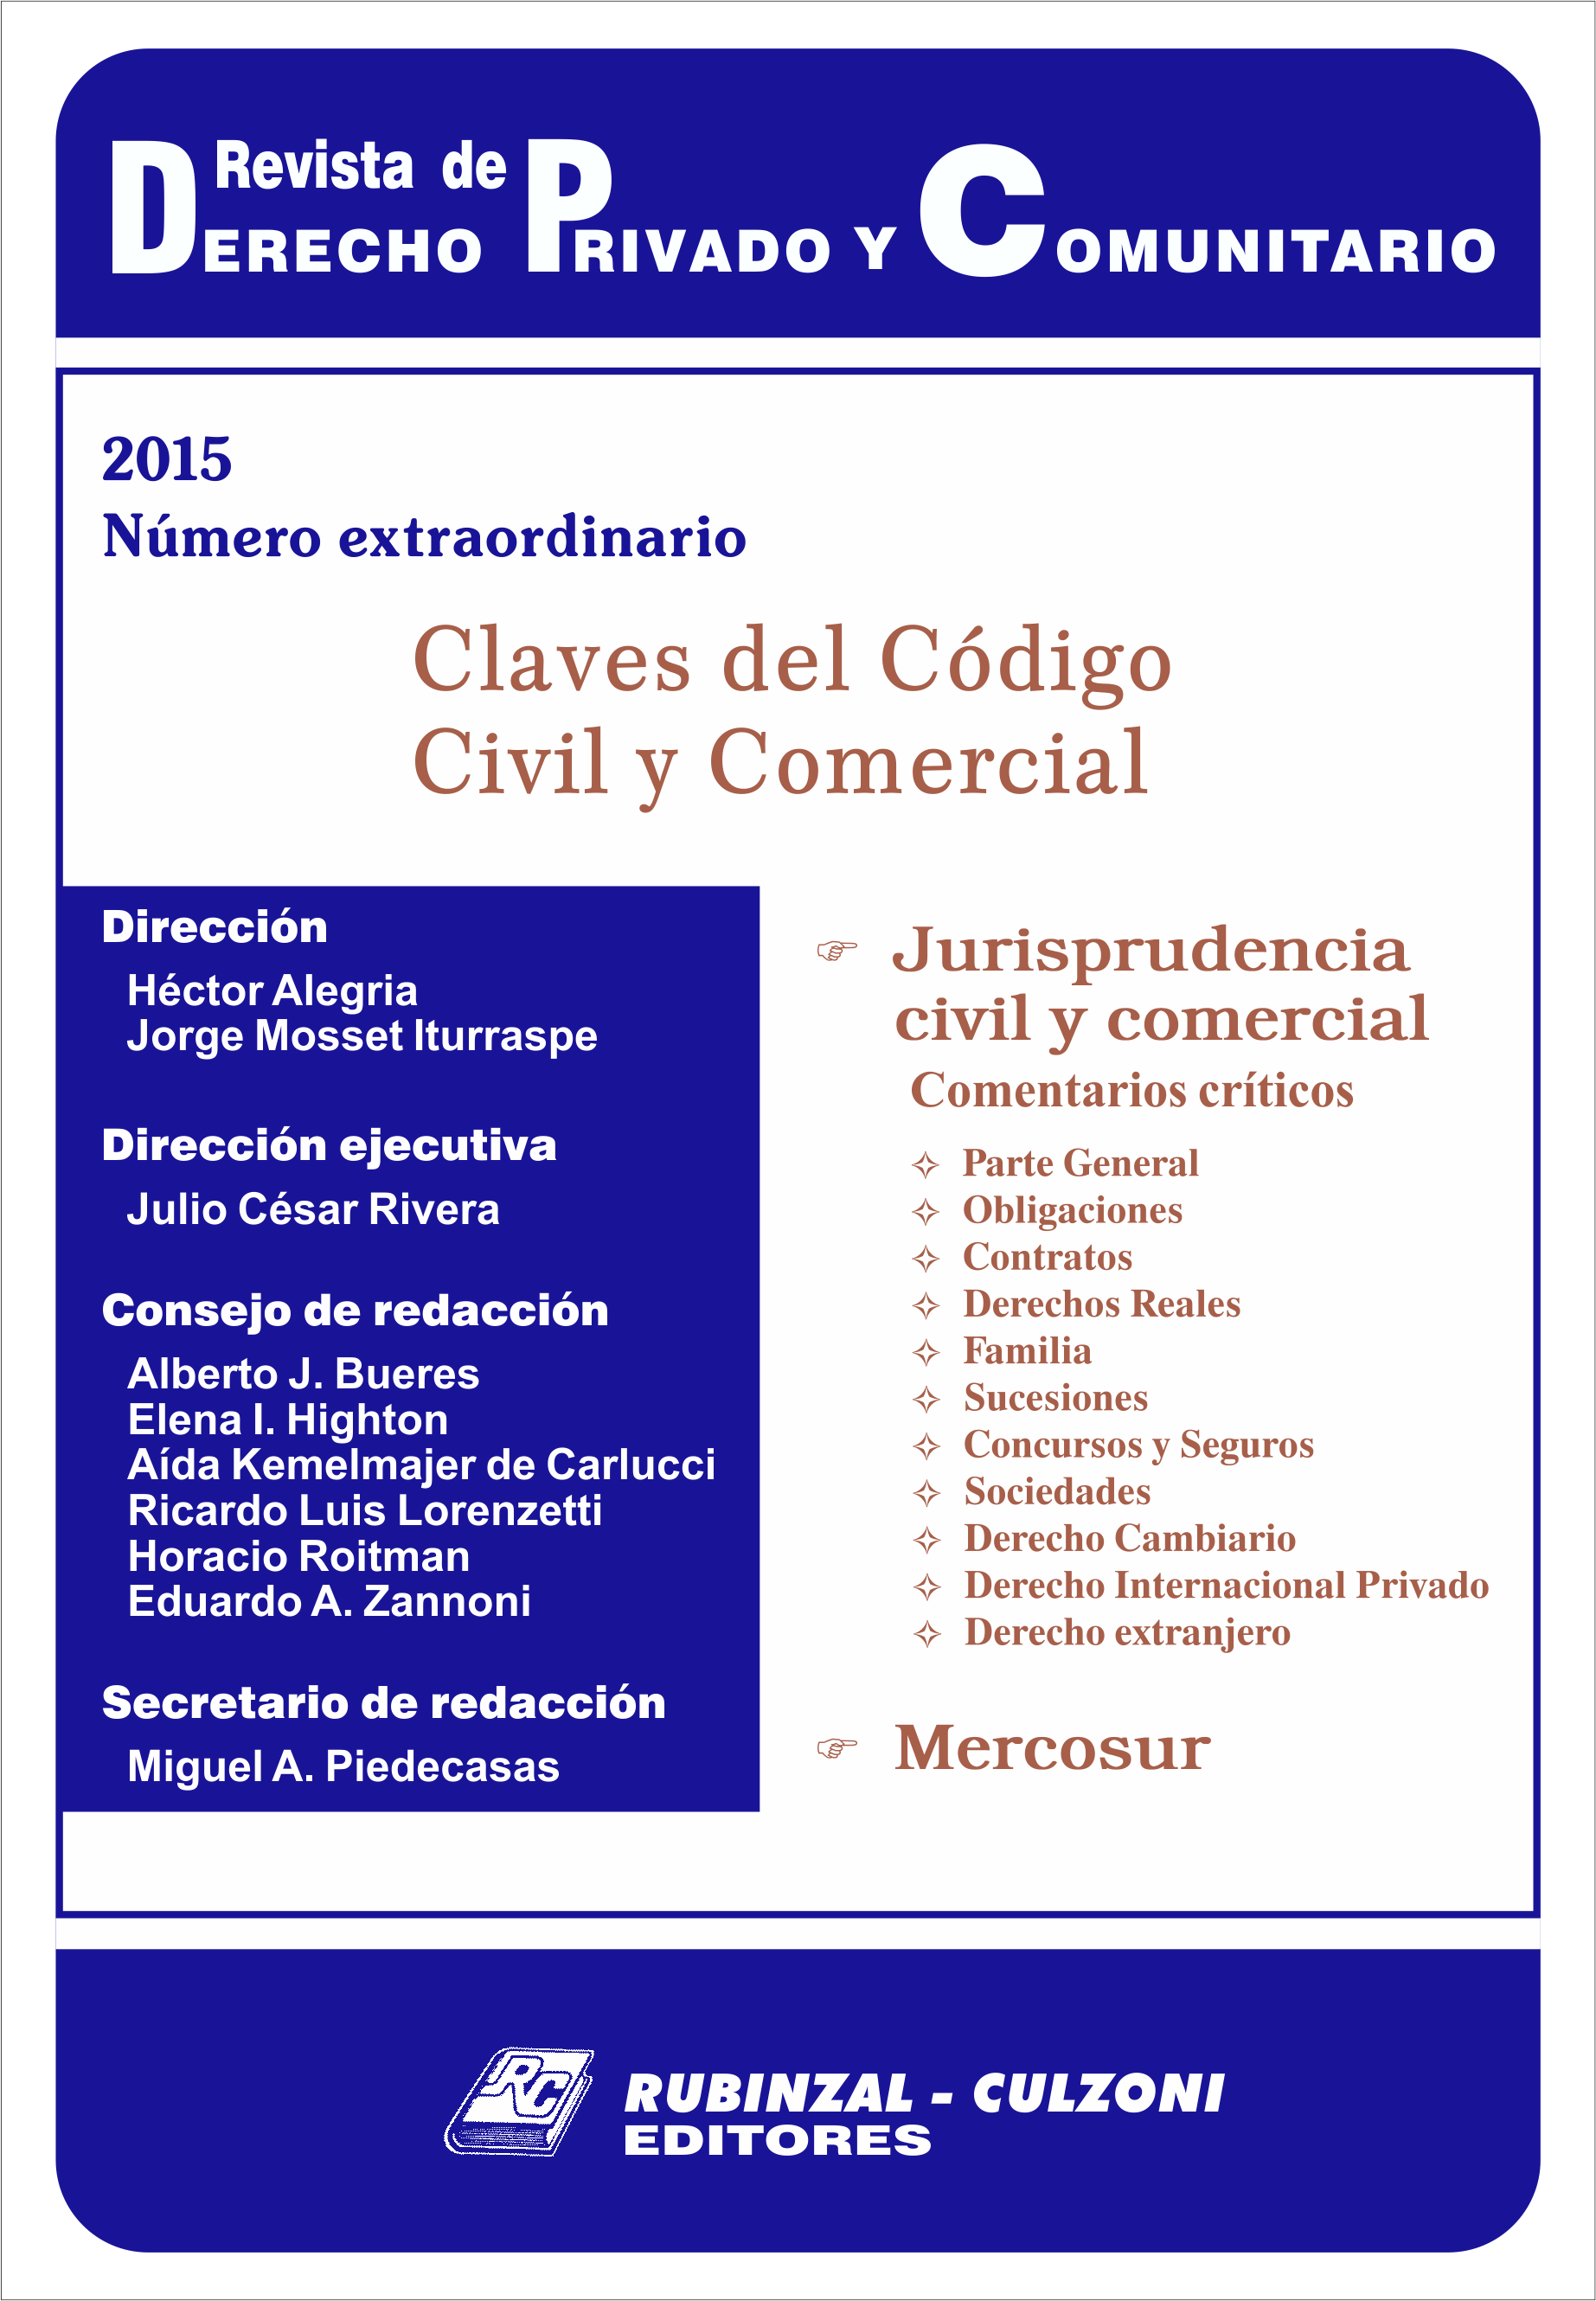 Revista de Derecho Privado y Comunitario - Numero extraordinario. Claves del Código Civil y Comercial